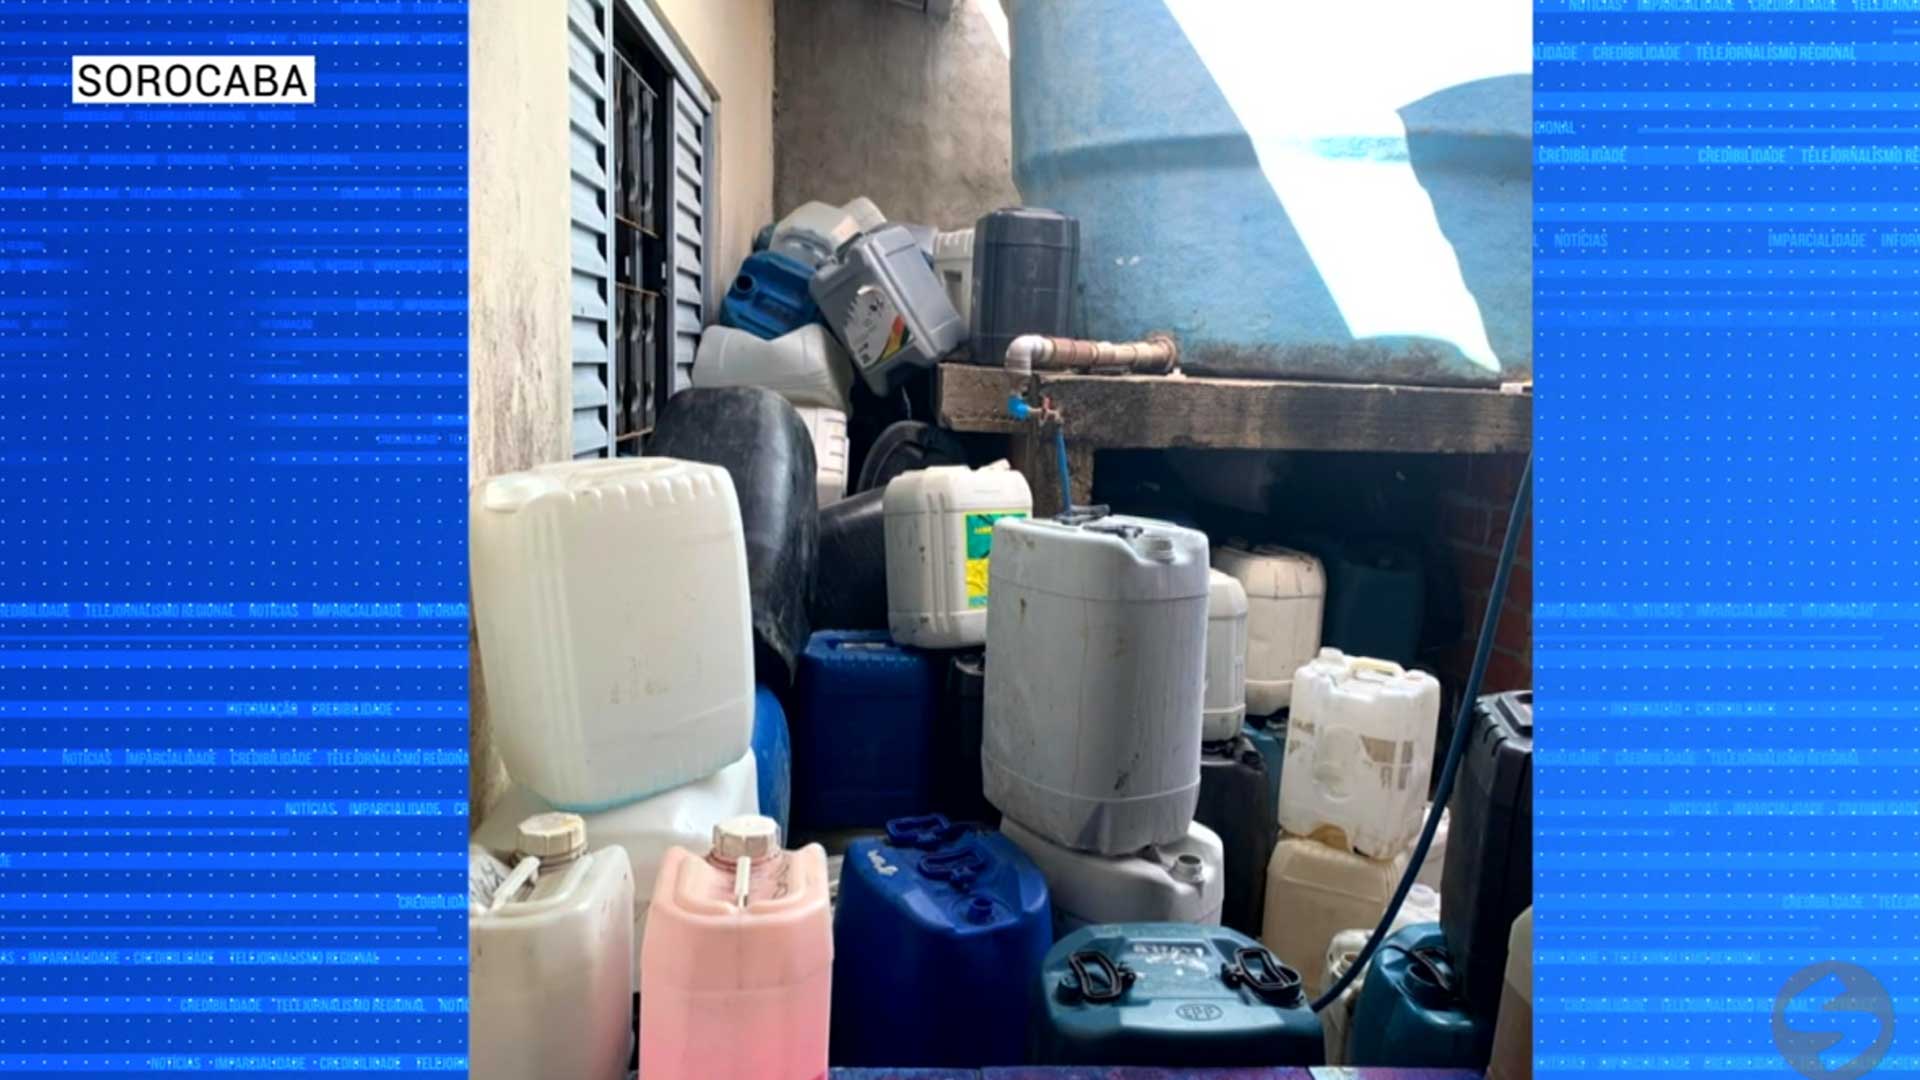 Polícia e prefeitura de Sorocaba descobrem fábrica clandestina de produtos de limpeza.